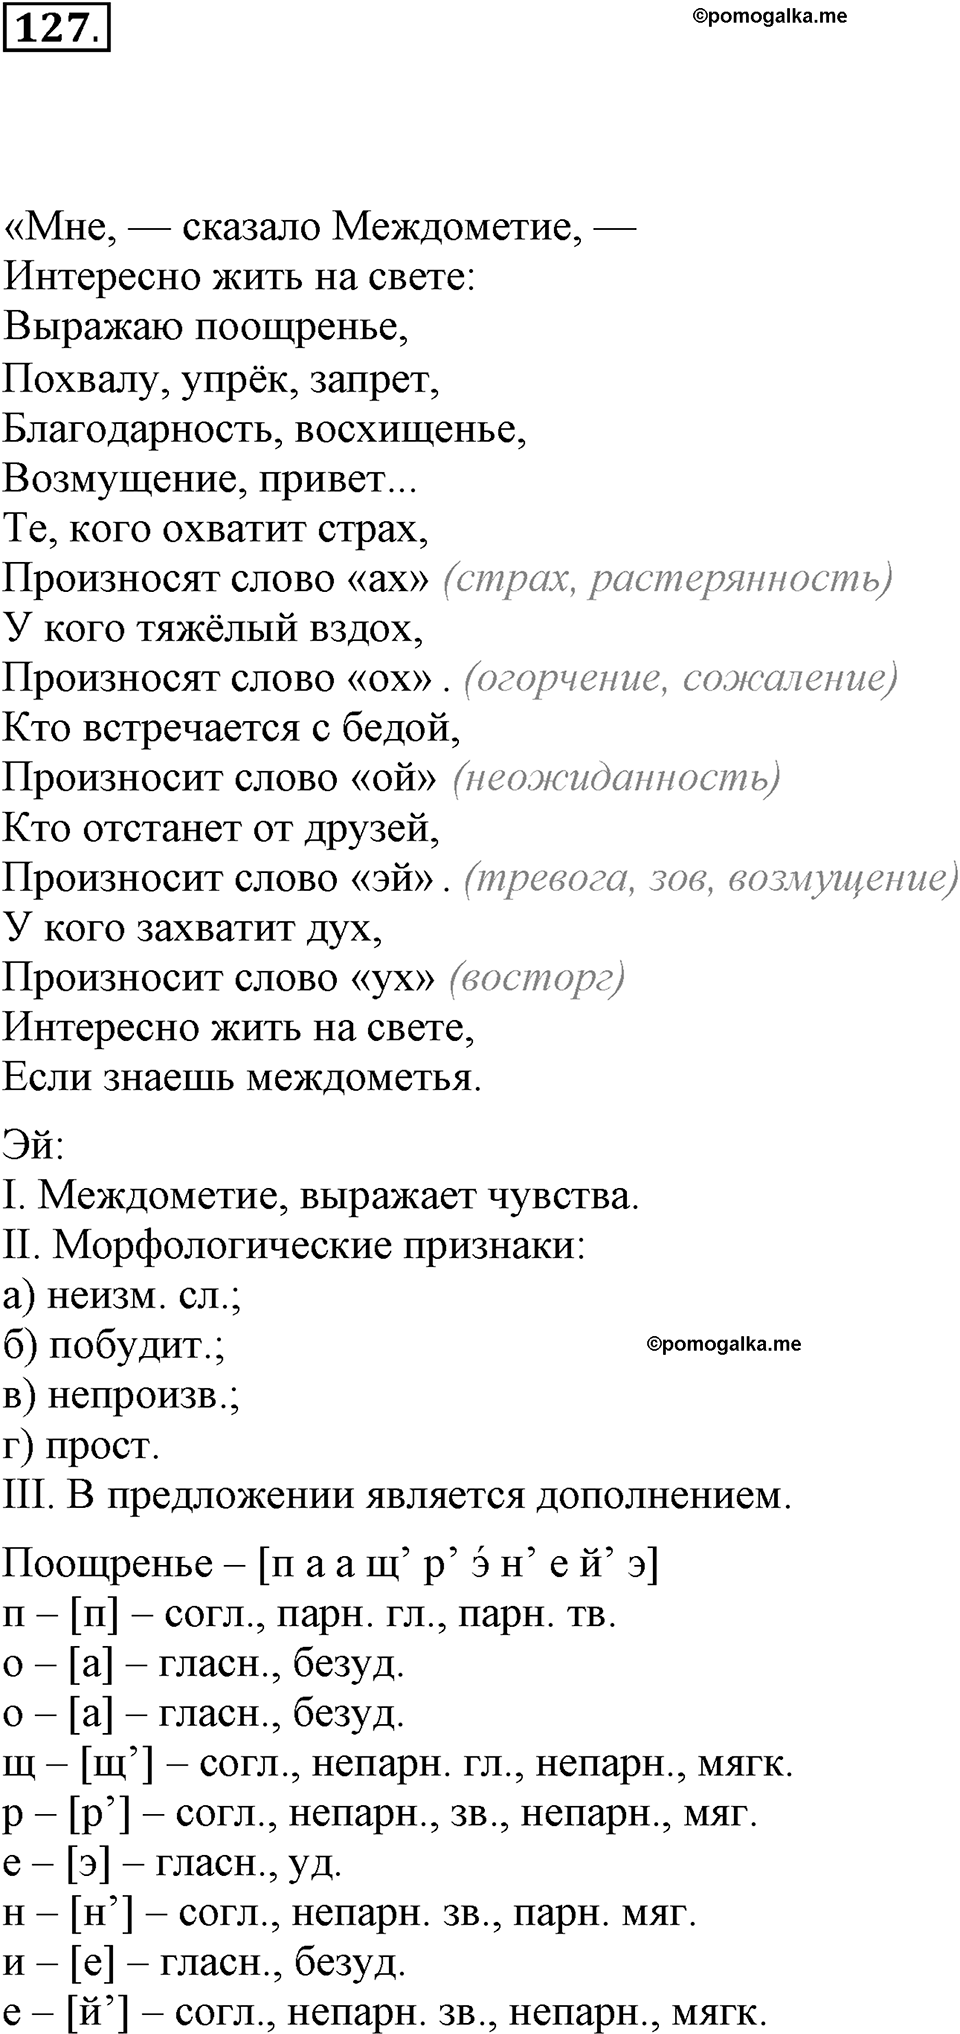 упражнение №127 русский язык 7 класс Ефремова рабочая тетрадь